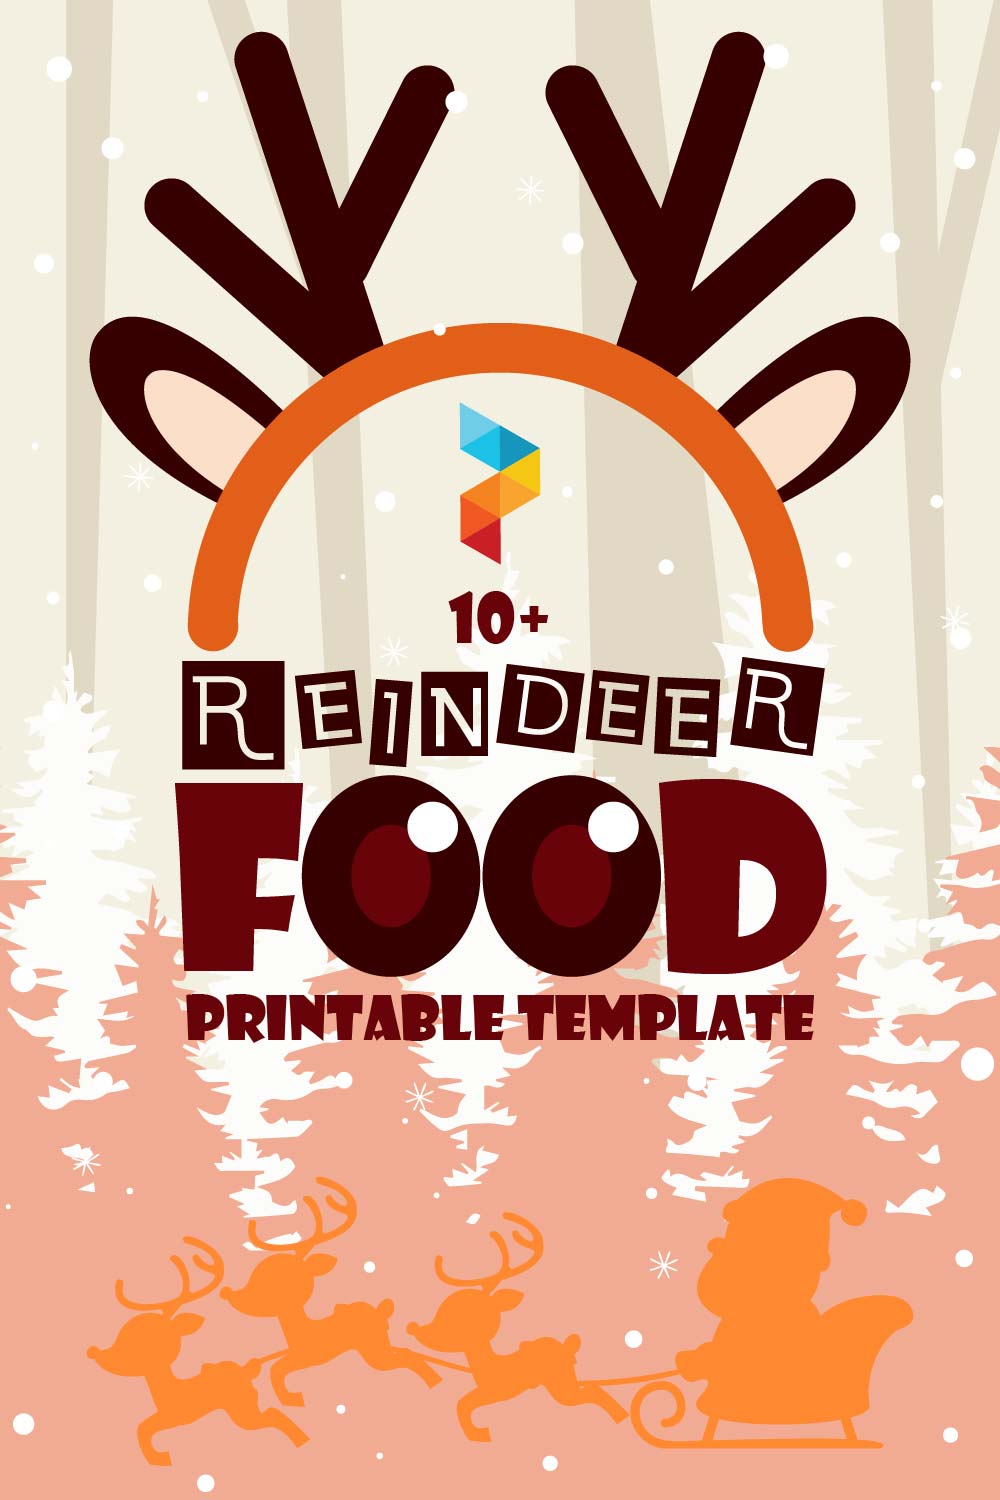 Reindeer Food Printable Template